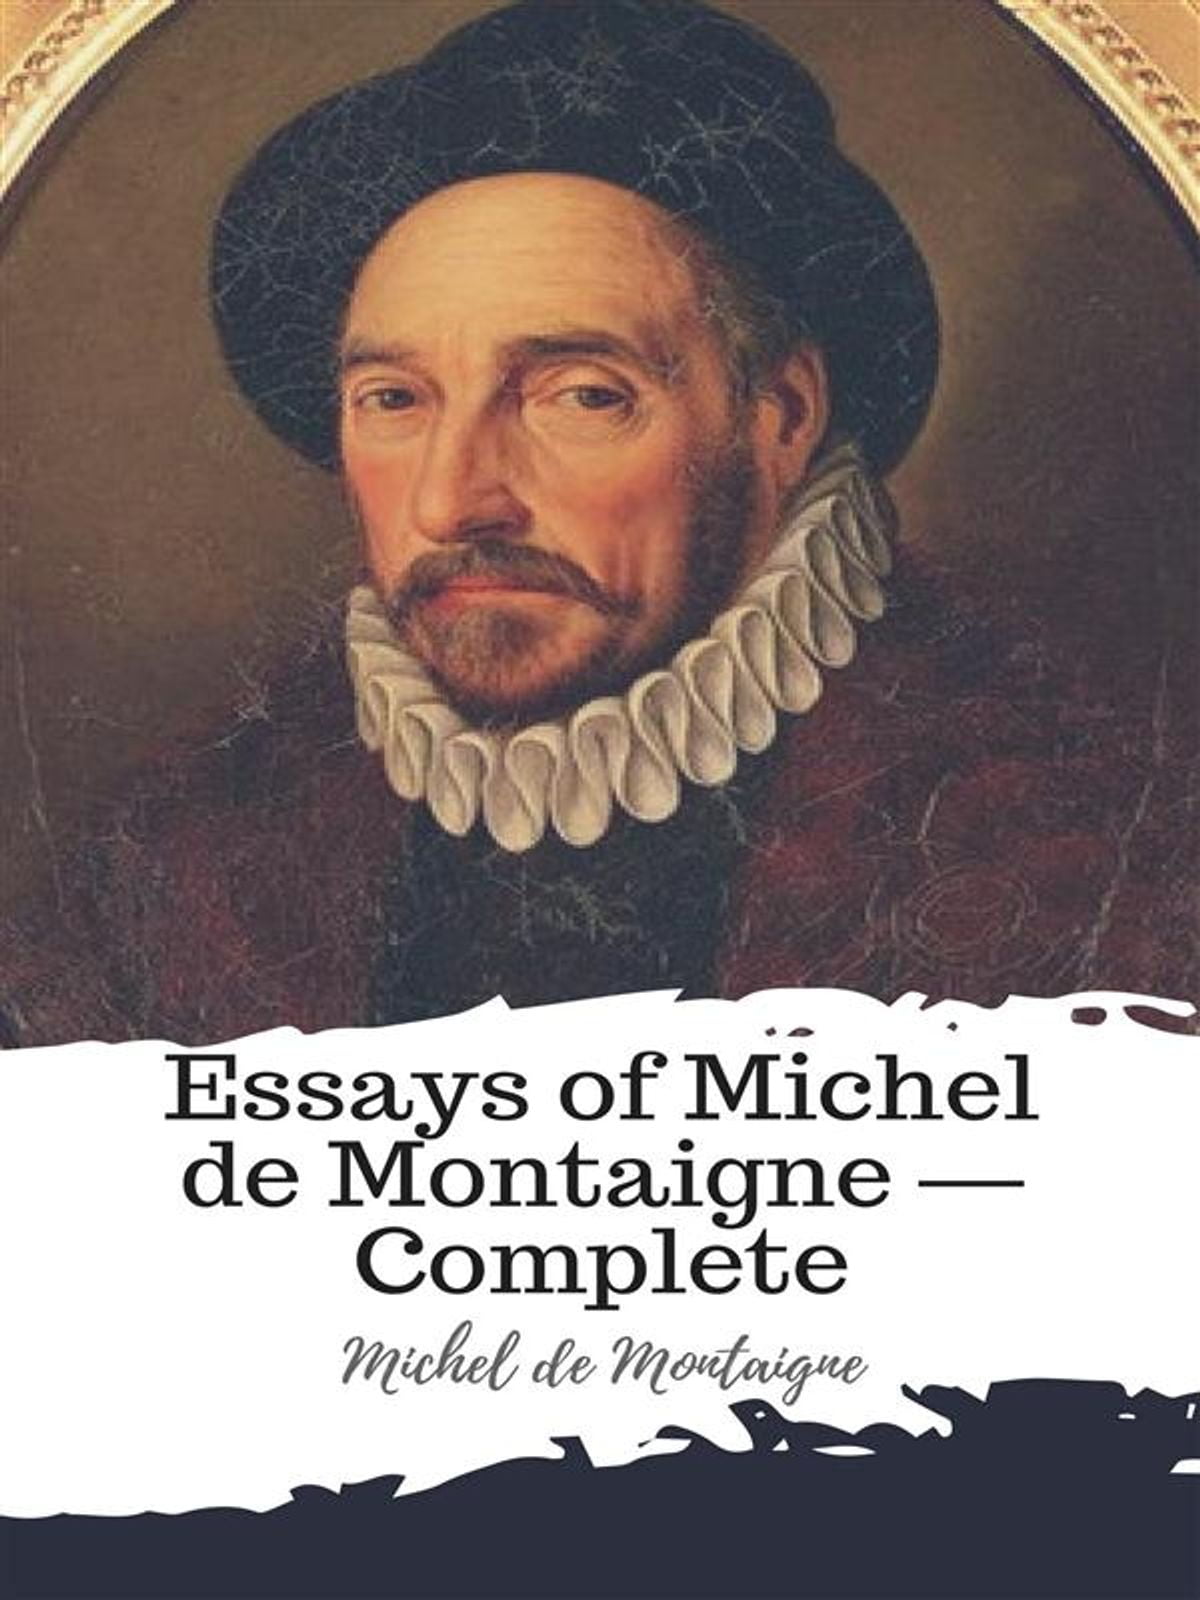 best essays by montaigne